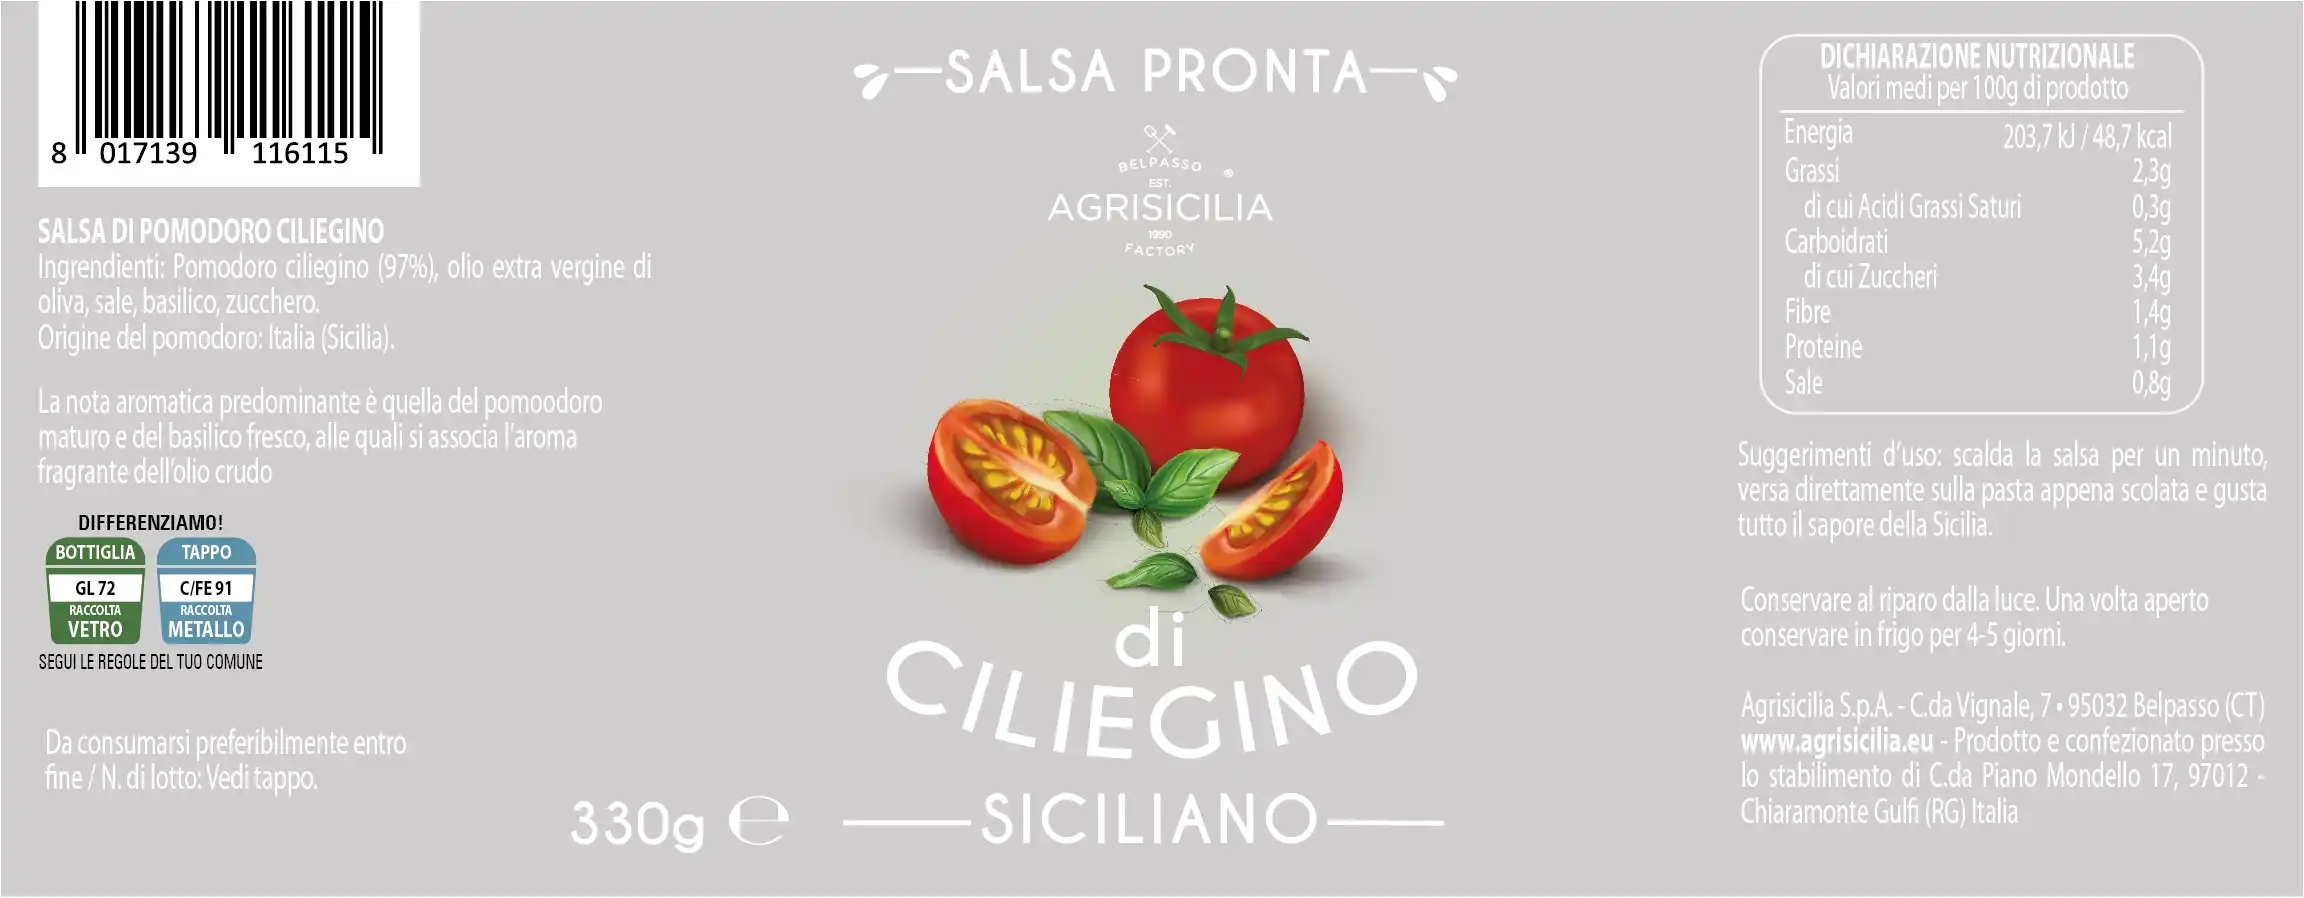 Etichetta Salsa Di Pomodoro Ciliegino Agrisicilia